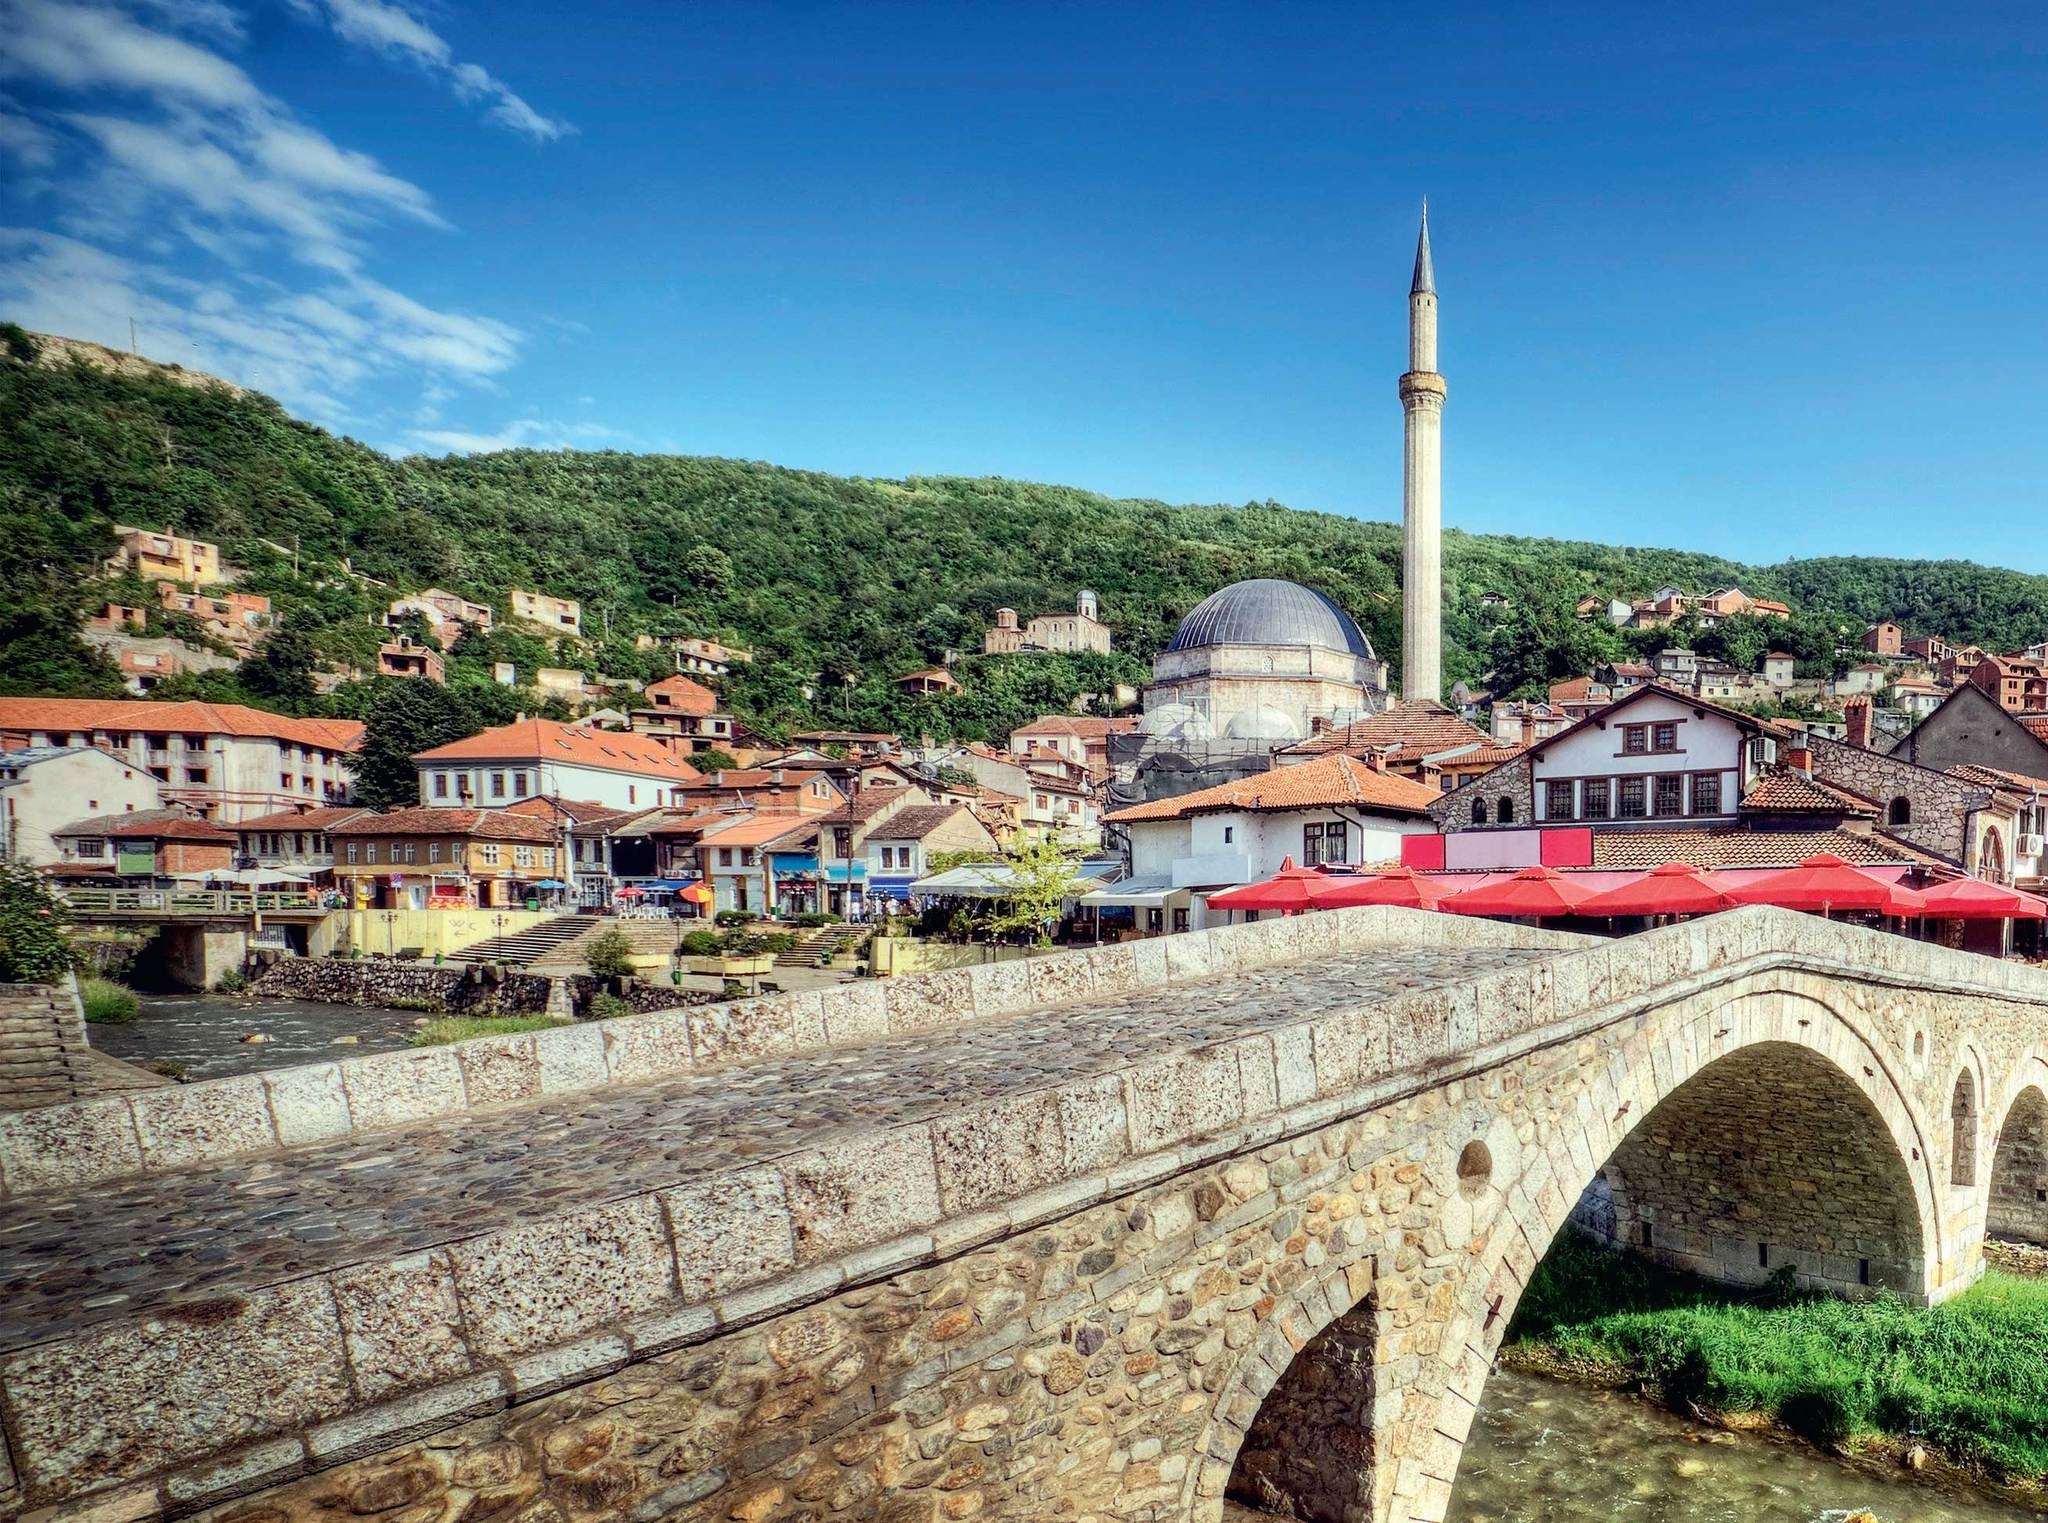 Her yerde Osmanlı'nın izleri var Kosova